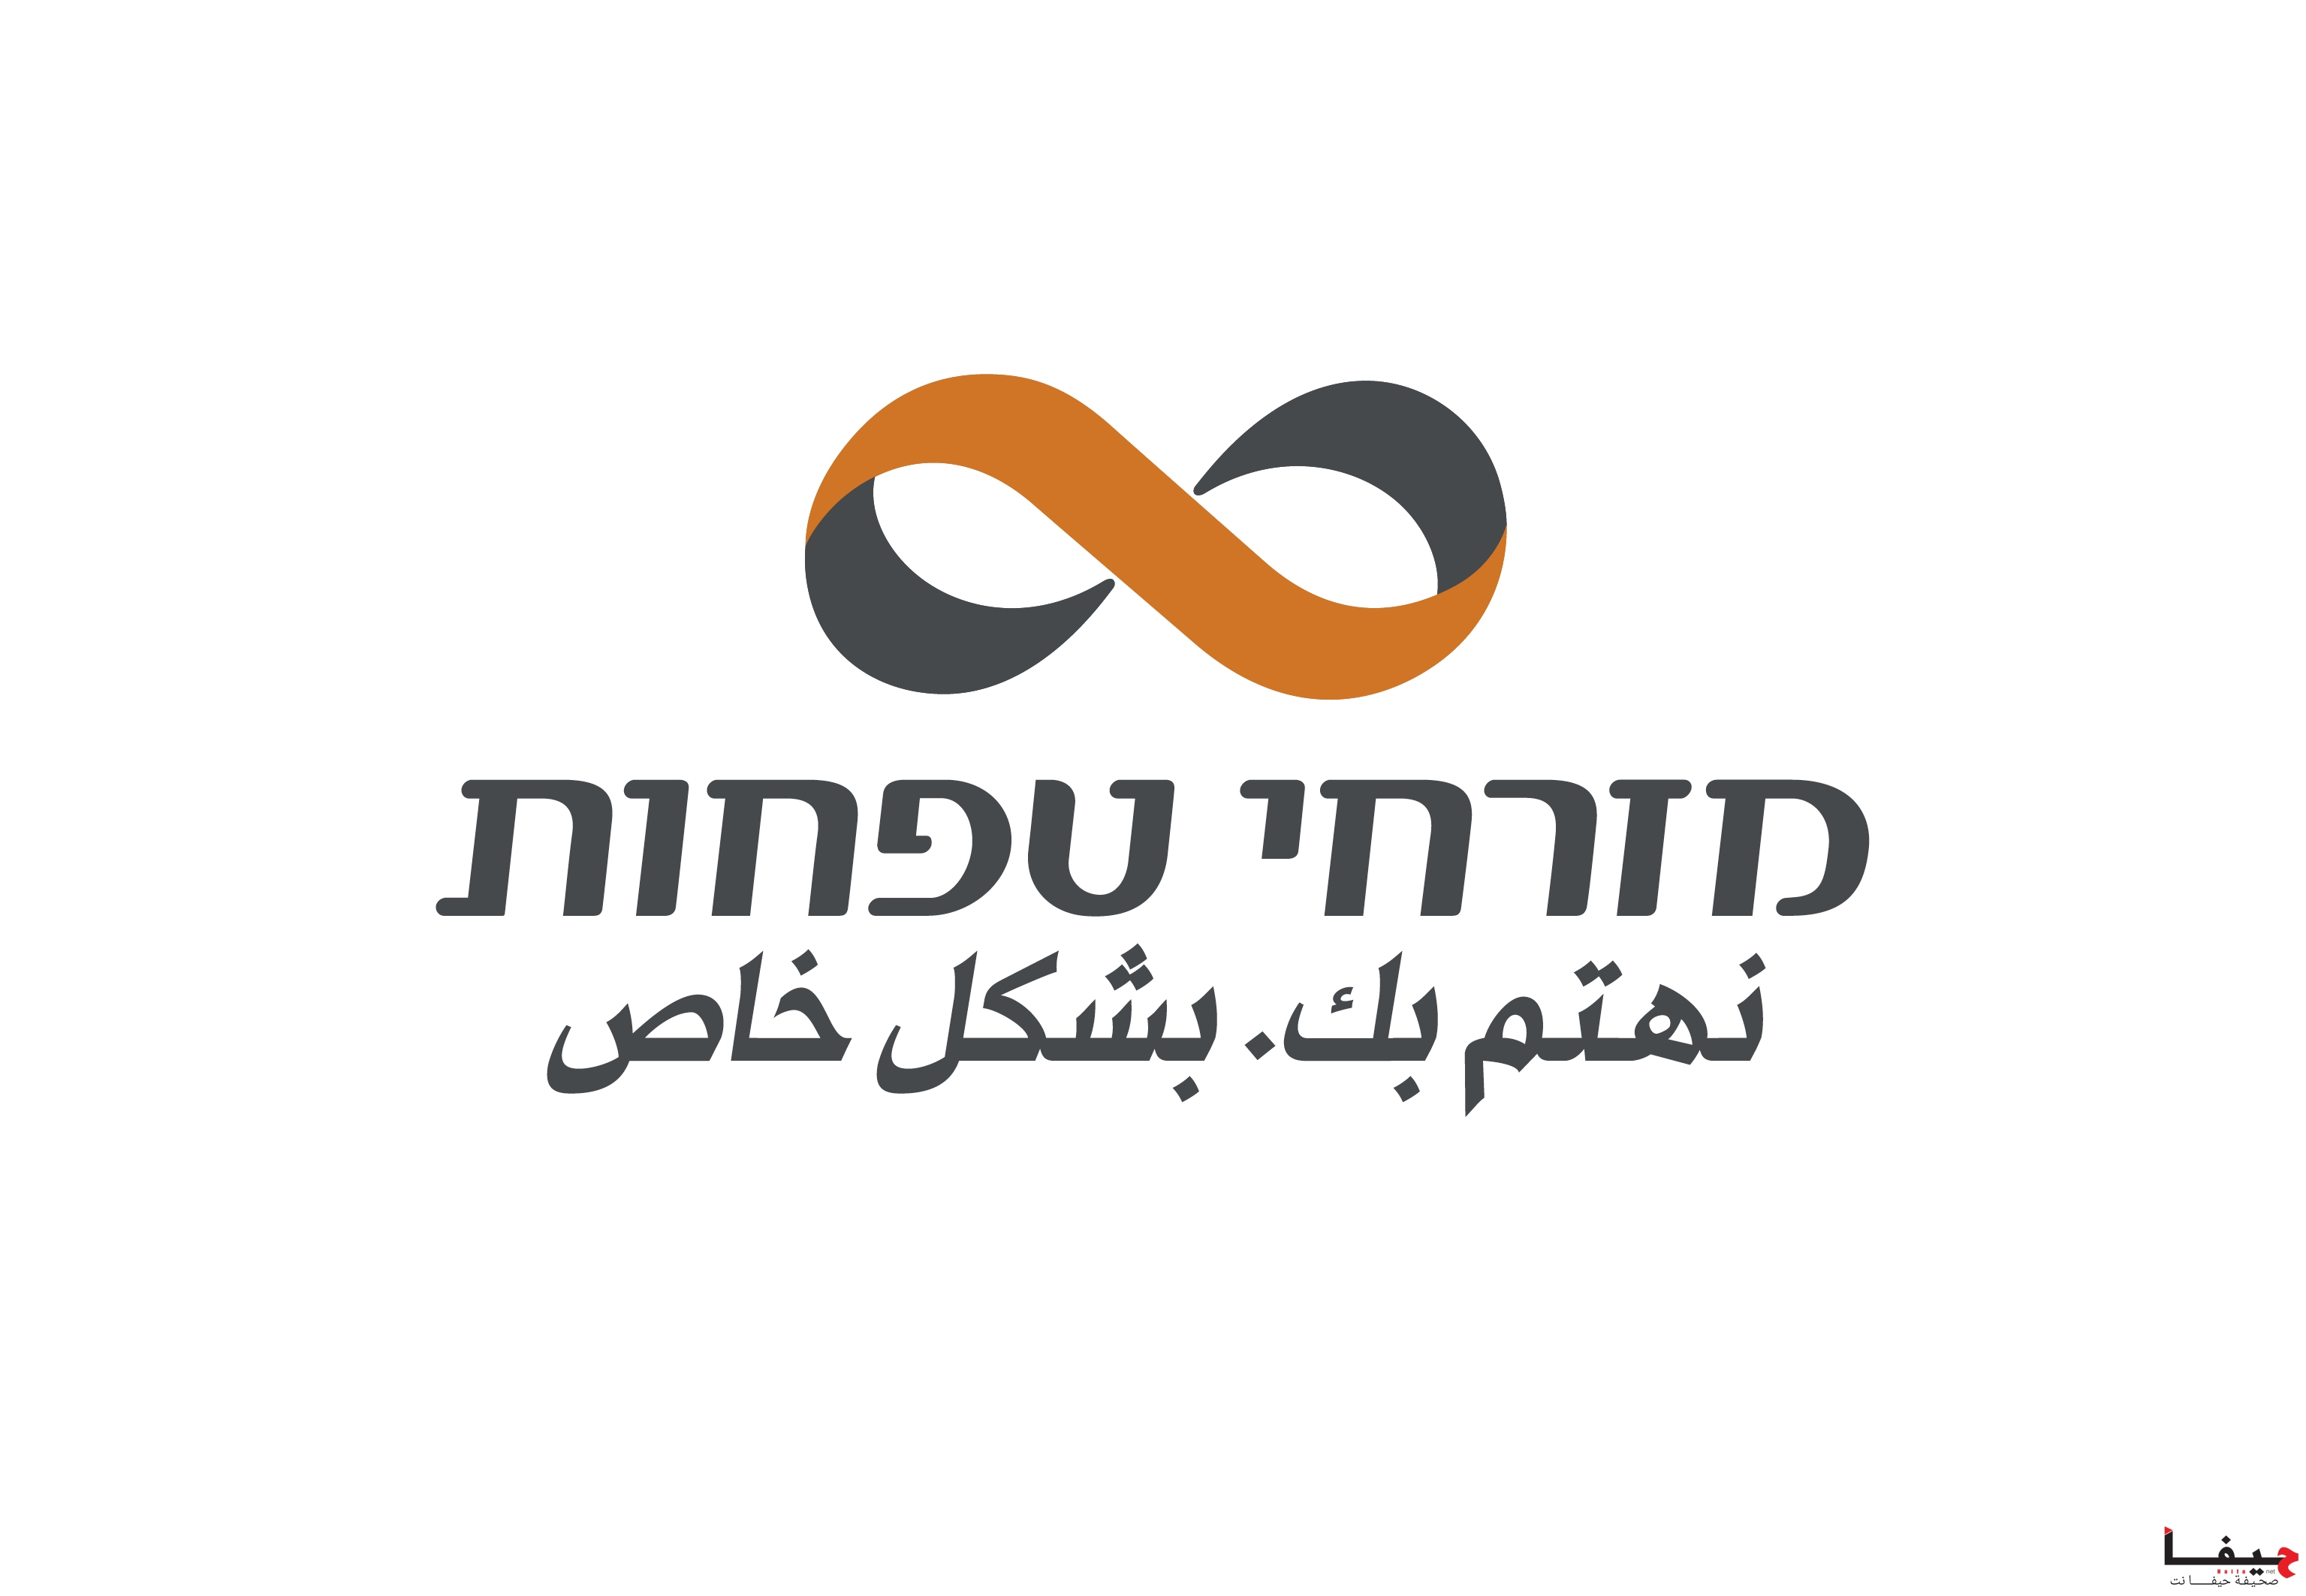 MZR_logo (5)